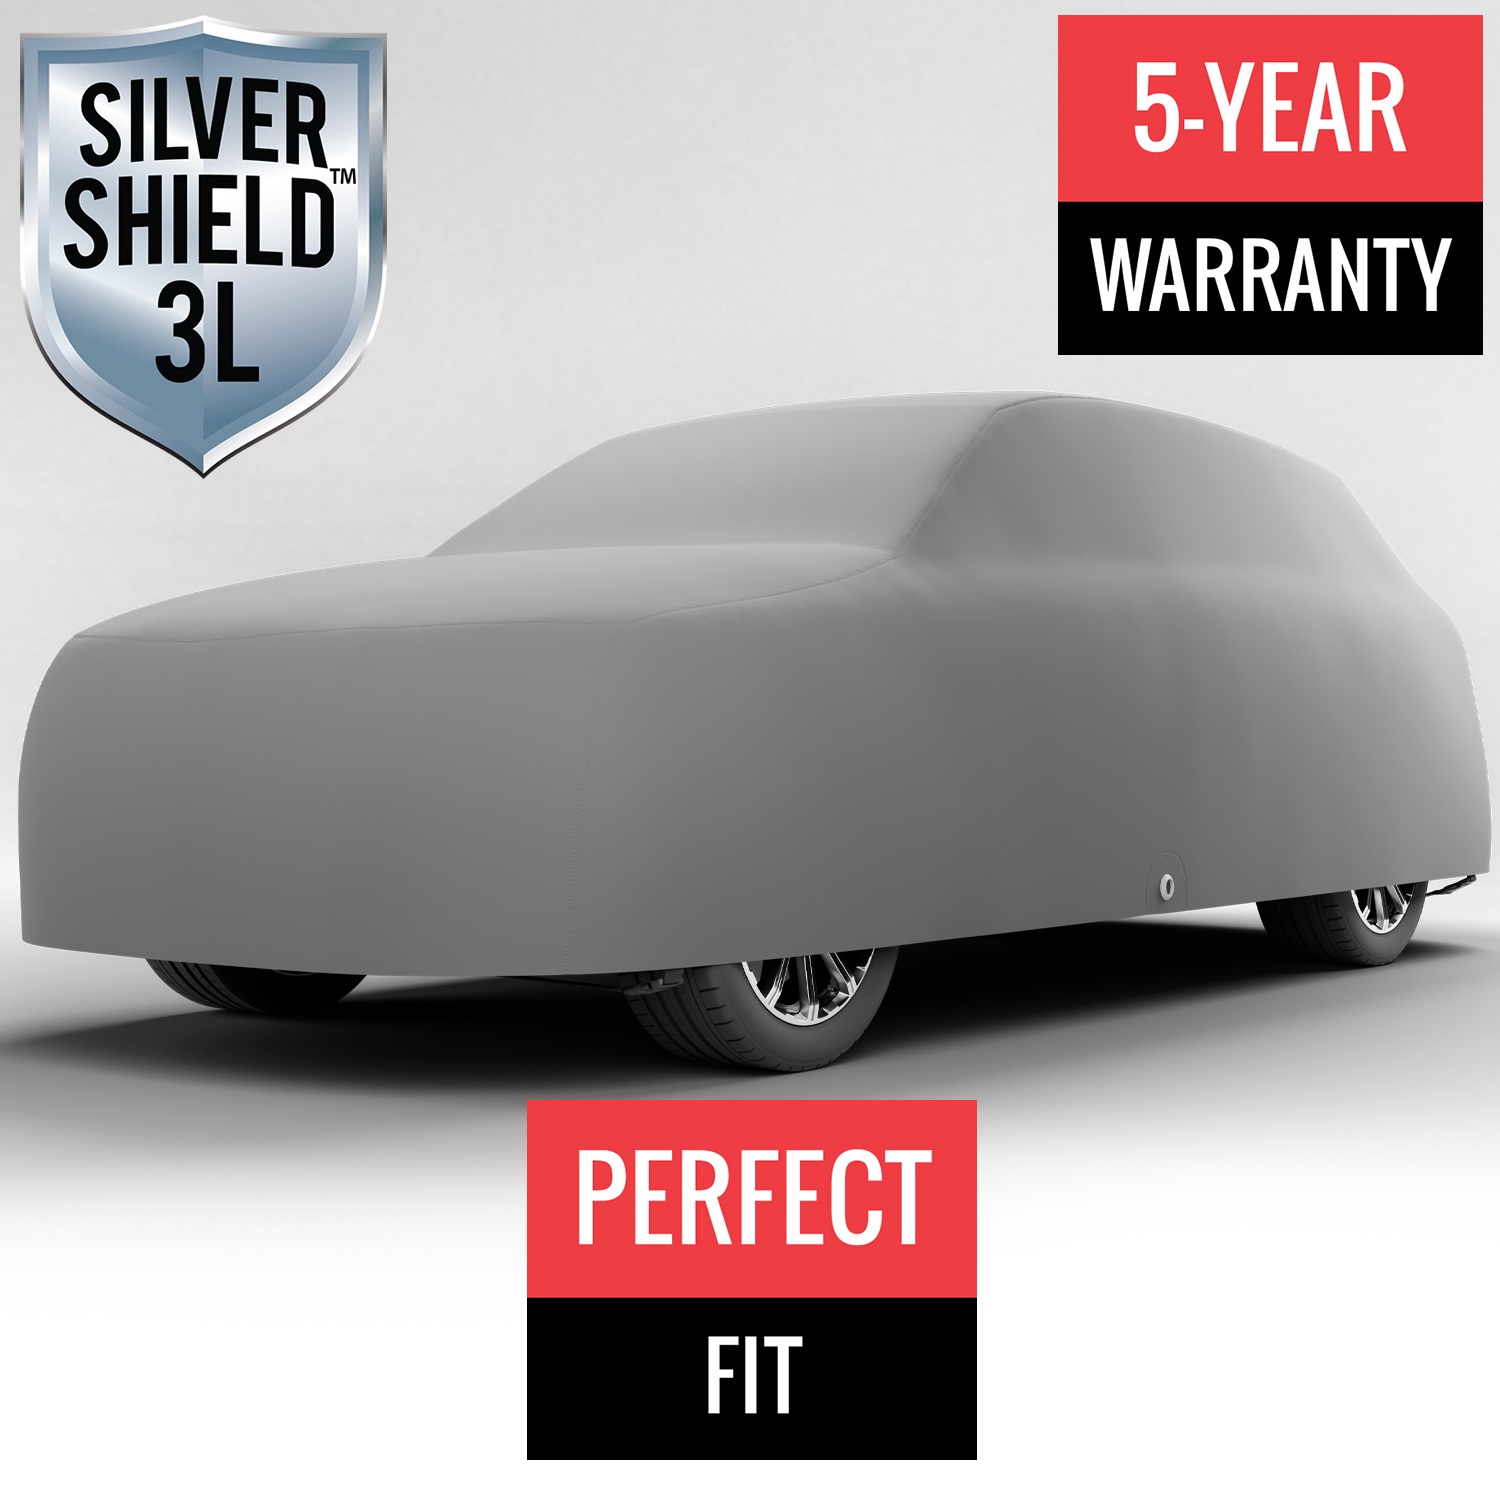 Silver Shield 3L - Car Cover for Mazda CX-9 2021 SUV 4-Door